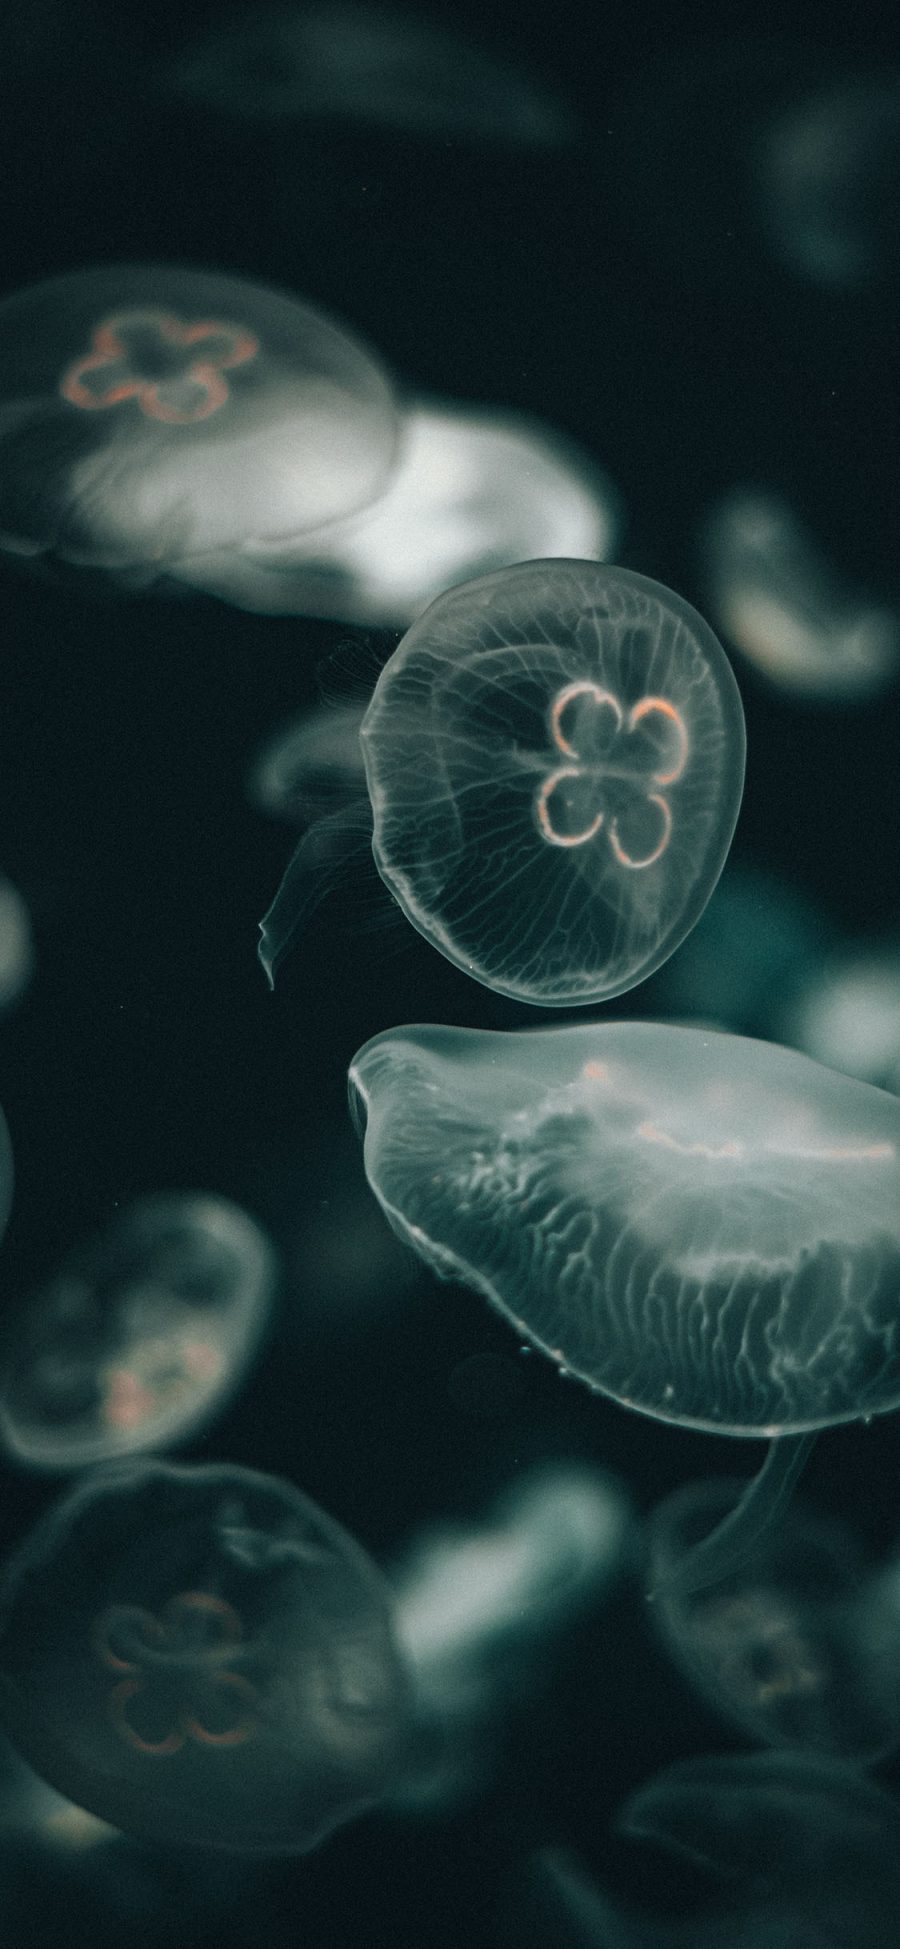 [2436×1125]水母 浮游 海洋生物 密集 苹果手机壁纸图片